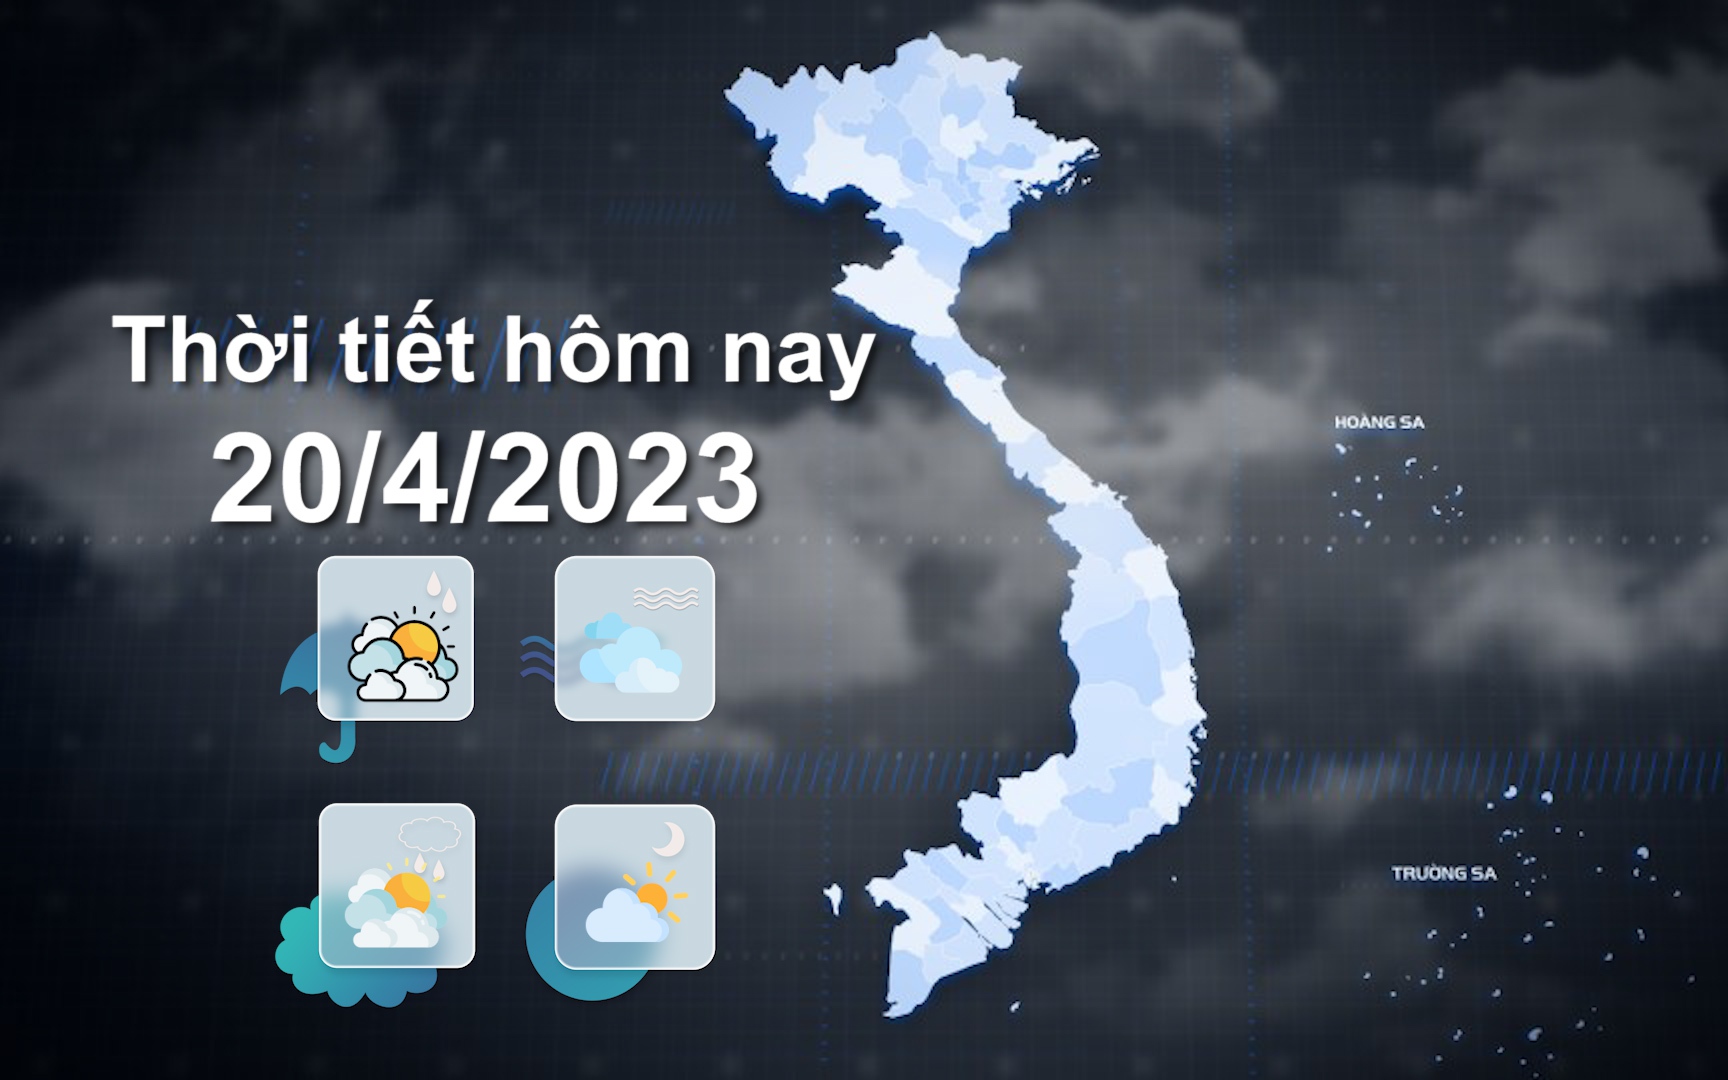 Thời tiết hôm nay 20/4/2023: Tây Bắc, Bắc Trung Bộ nắng nóng gay gắt, có nơi trên 40 độ C